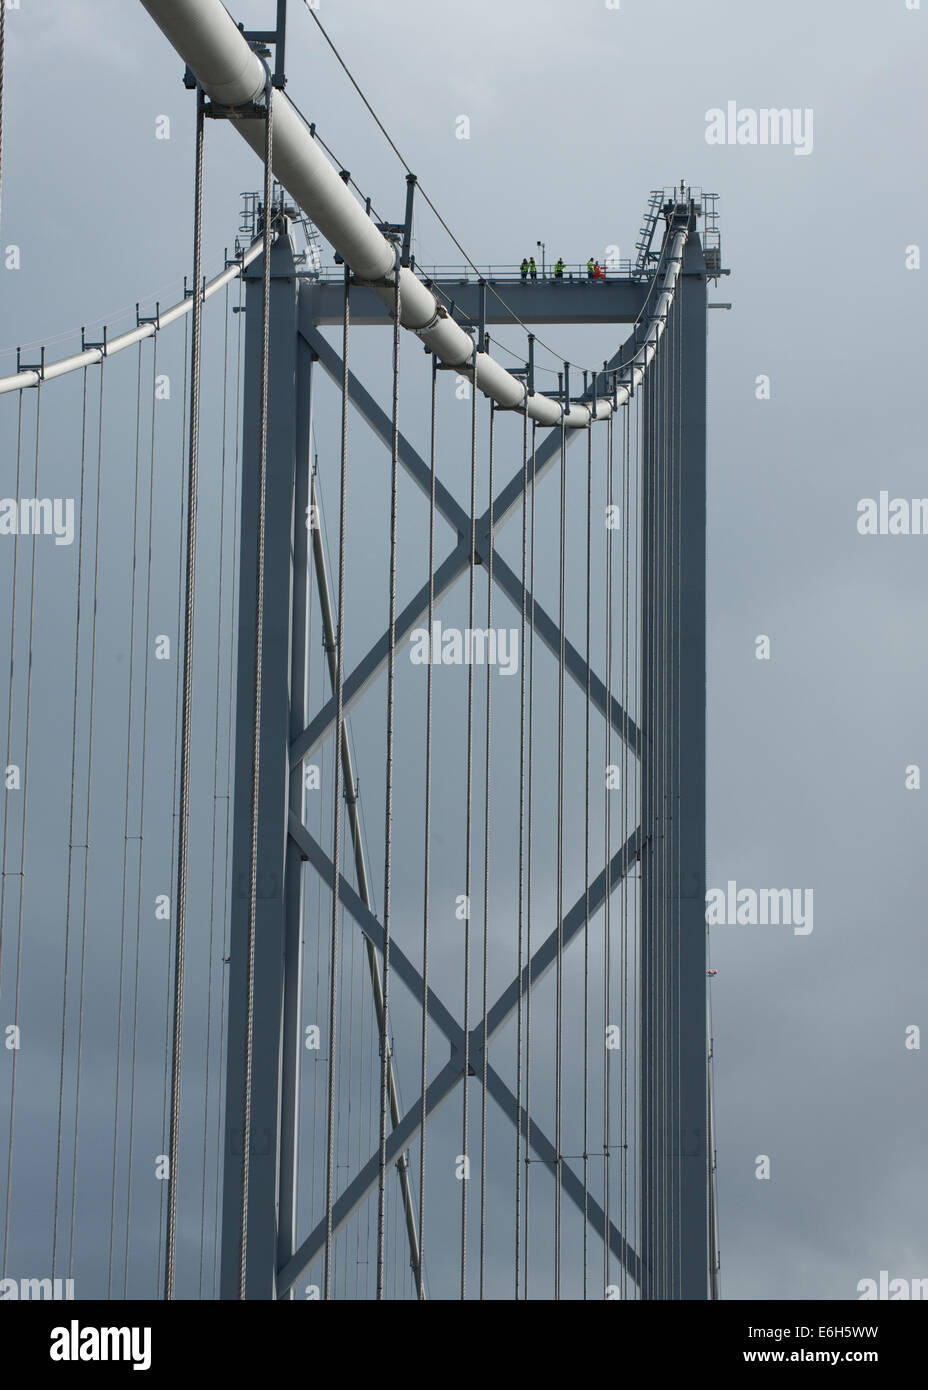 Visiteurs en haut de la grande tour de la Forth Road Bridge - pont suspendu enjambant le Firth of Forth, Édimbourg, Écosse Banque D'Images